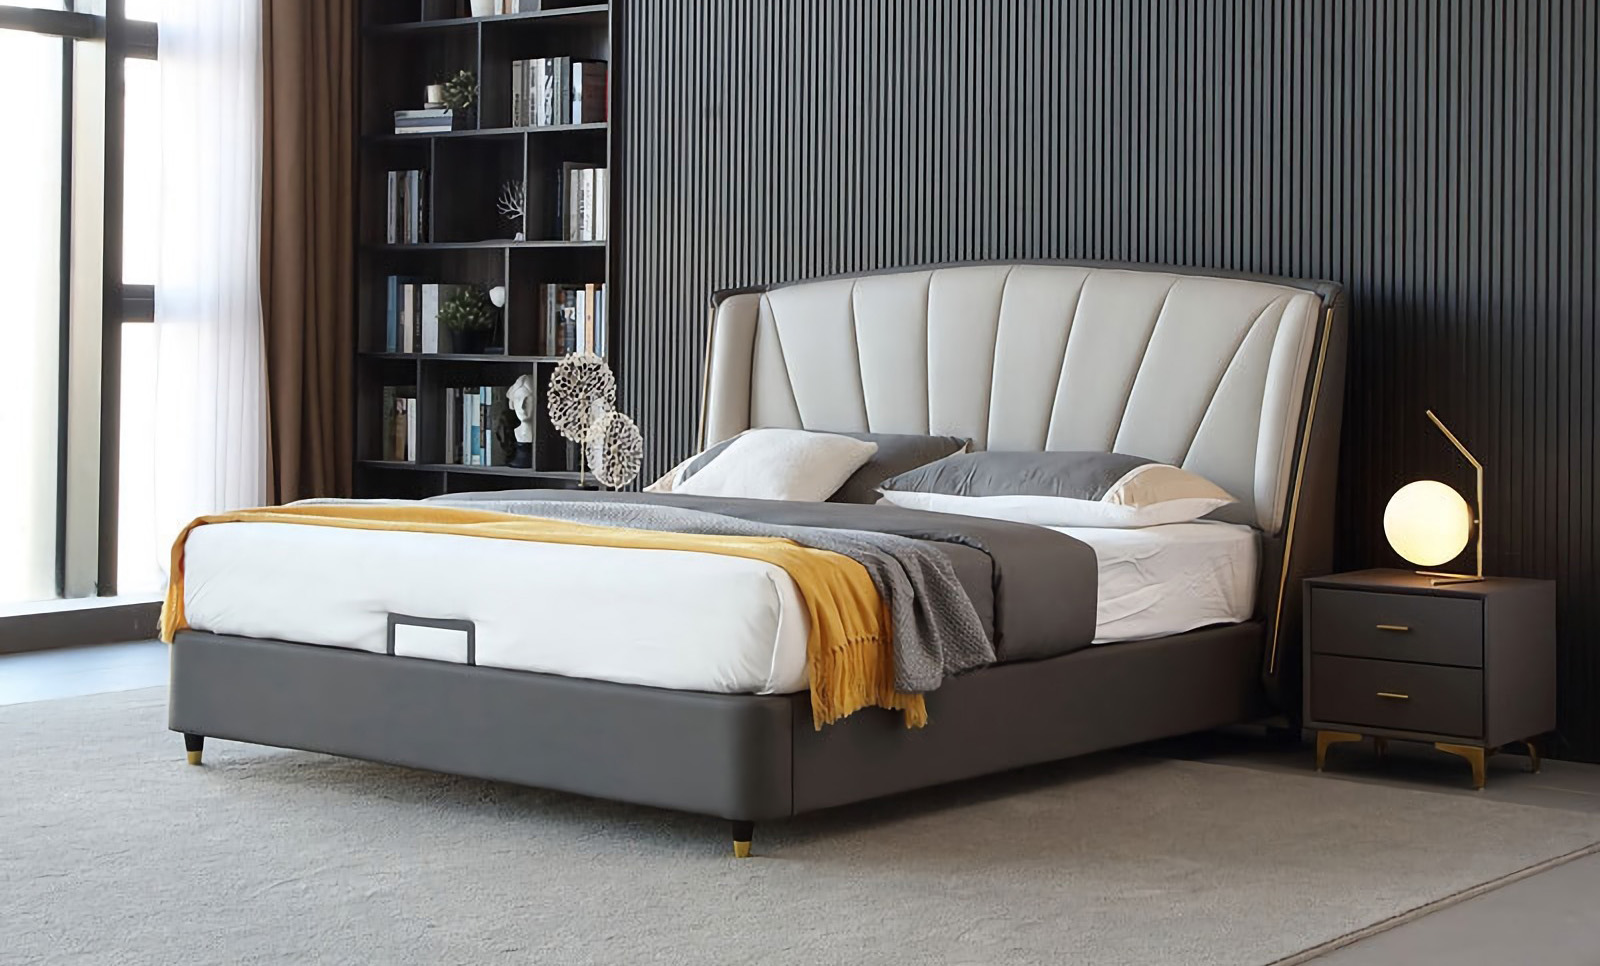 モダン ミニマリスト ベッドのデザイン モダン ミニマリスト ベッドの特徴。